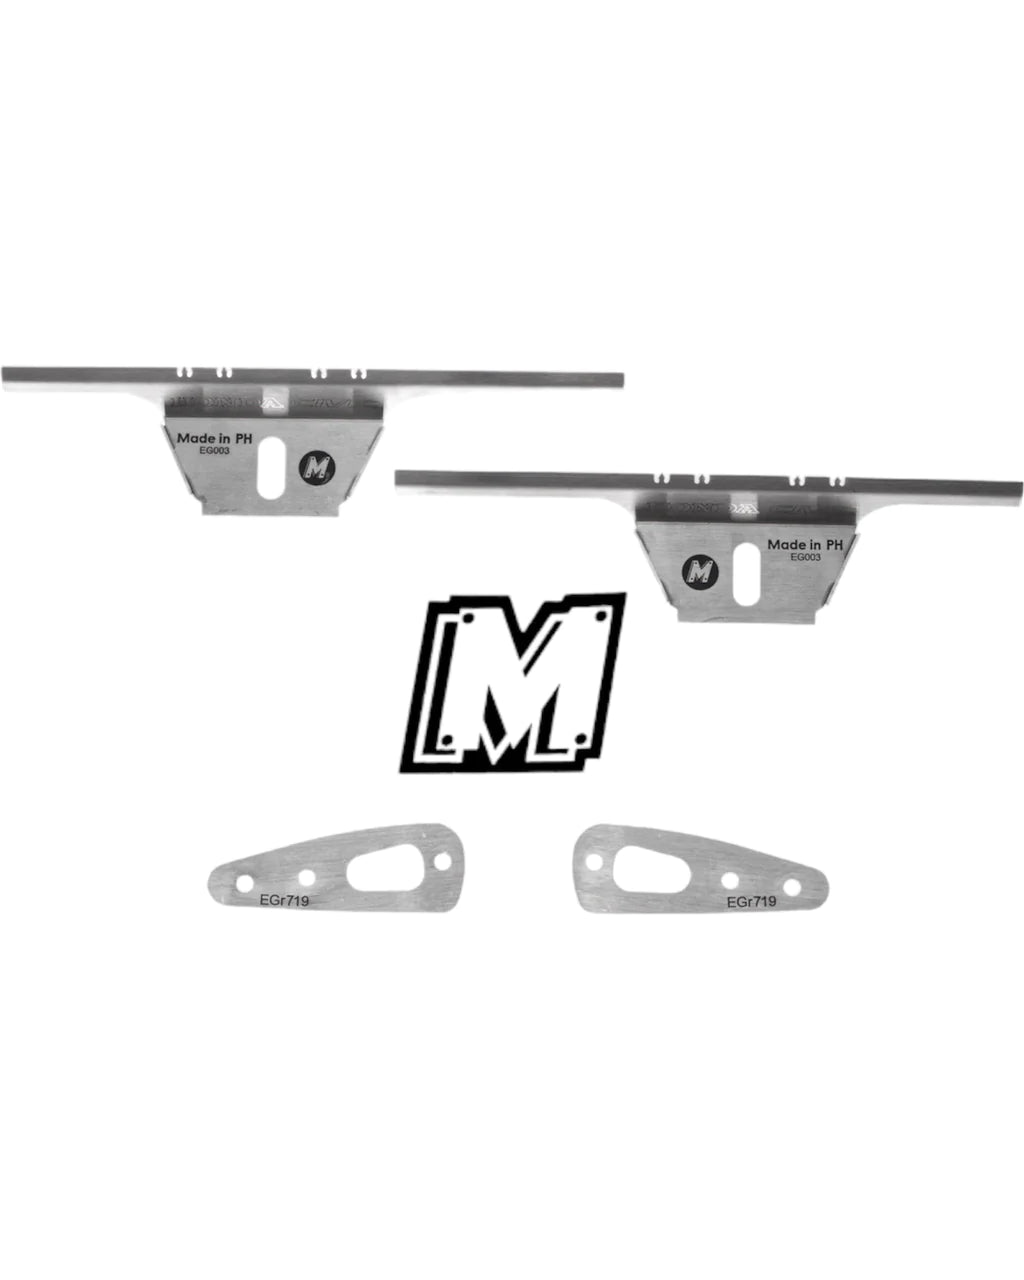 MAC Lifter Kit - EG Coupe & Sedan Rear Lifter Kit